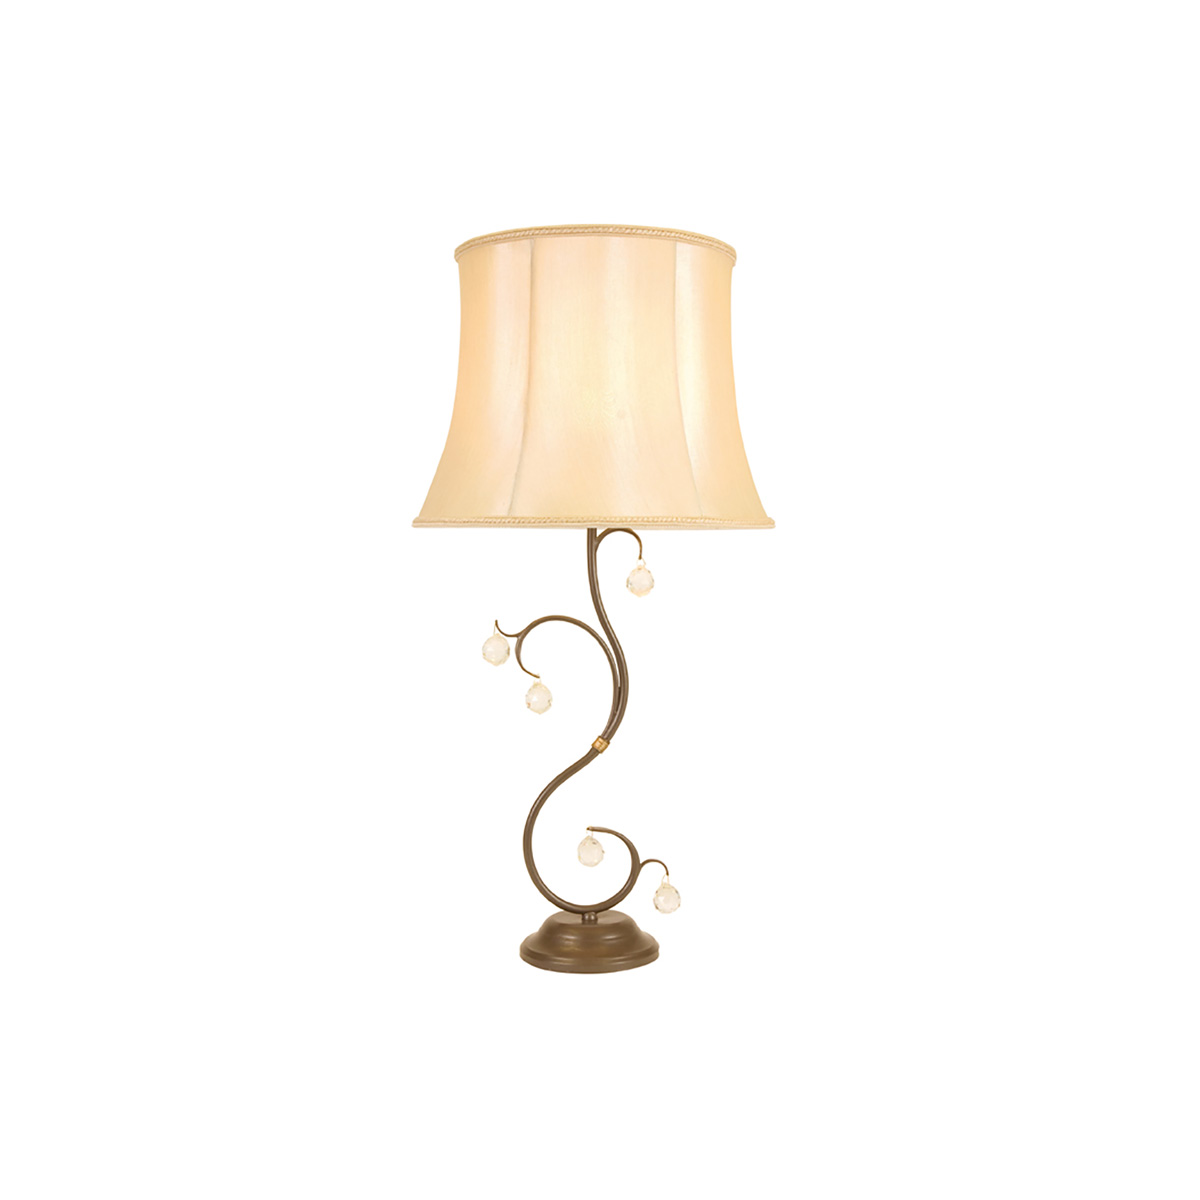 Настольная лампа LUN-TL-BRONZE, Настольные лампы Классический | Бронза | Прихожая, спальня, гостиная, столовая.